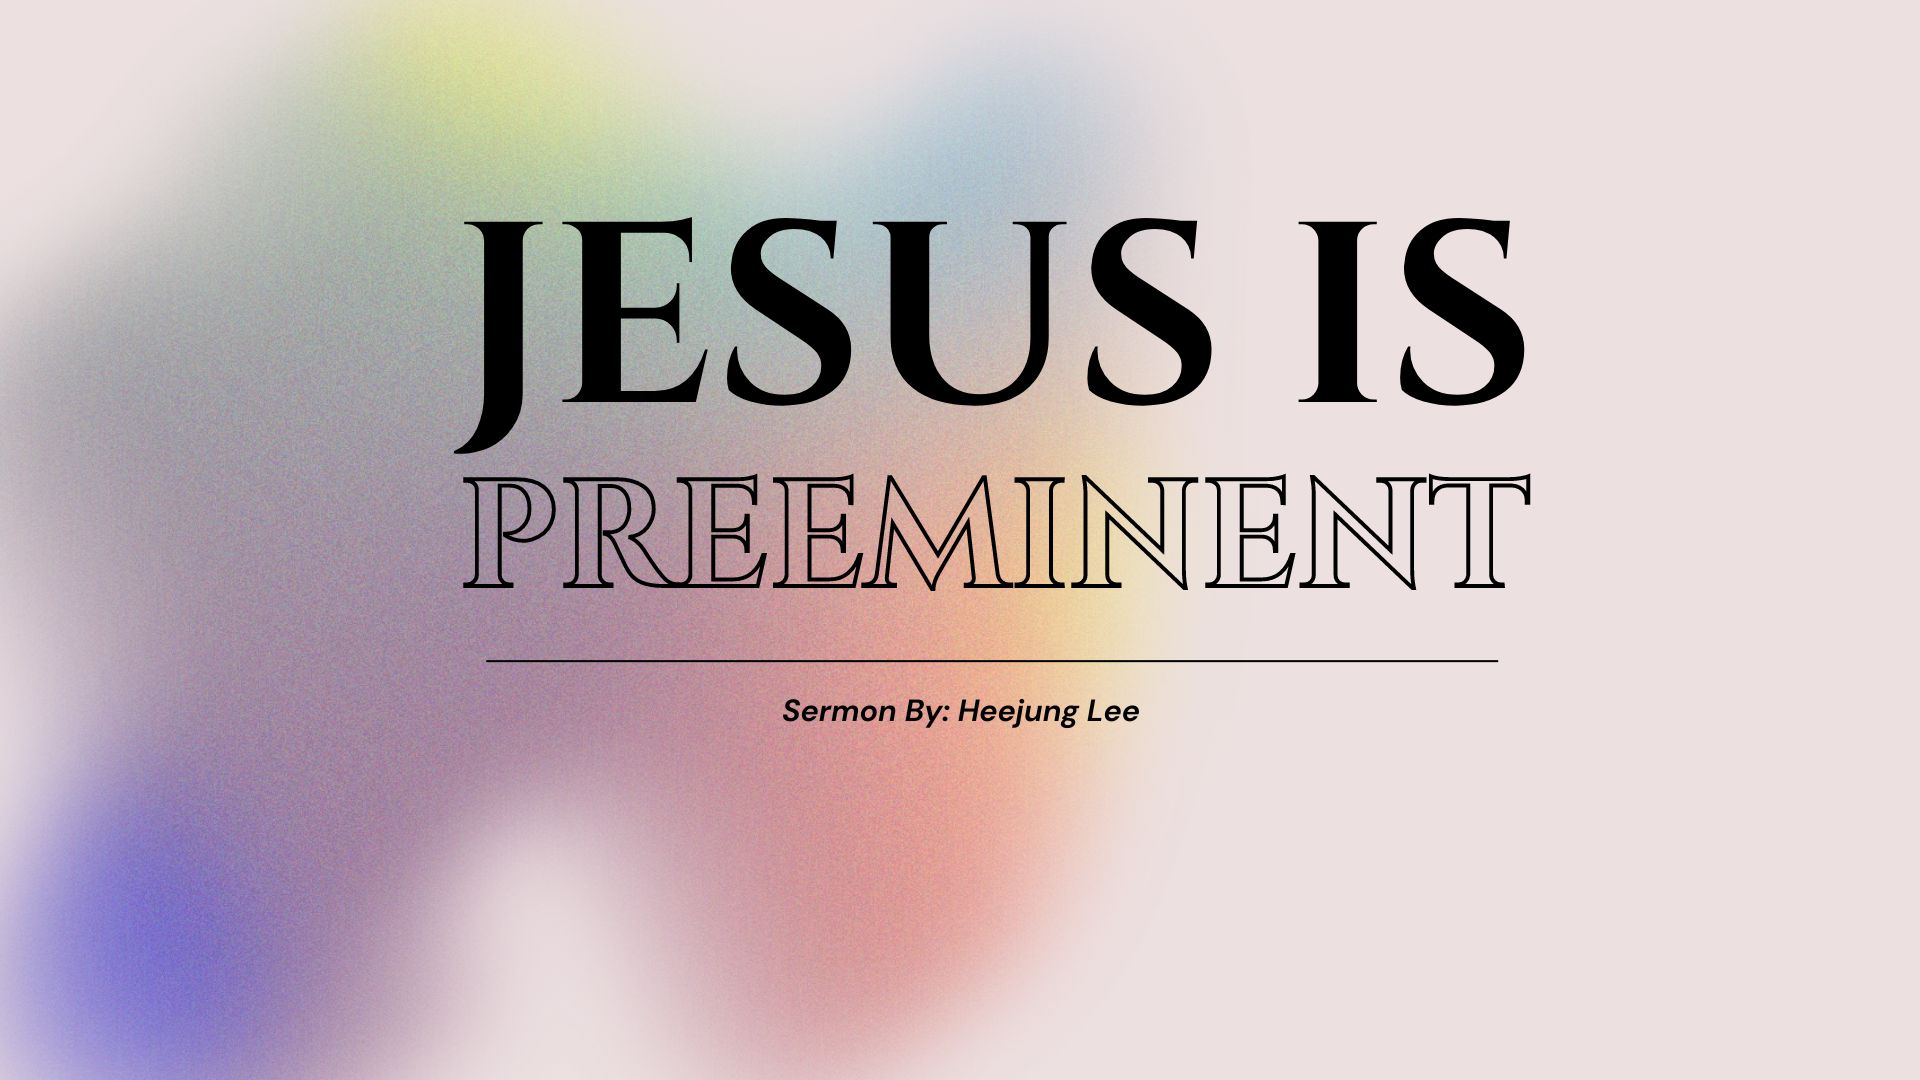 Jesus is Preeminent